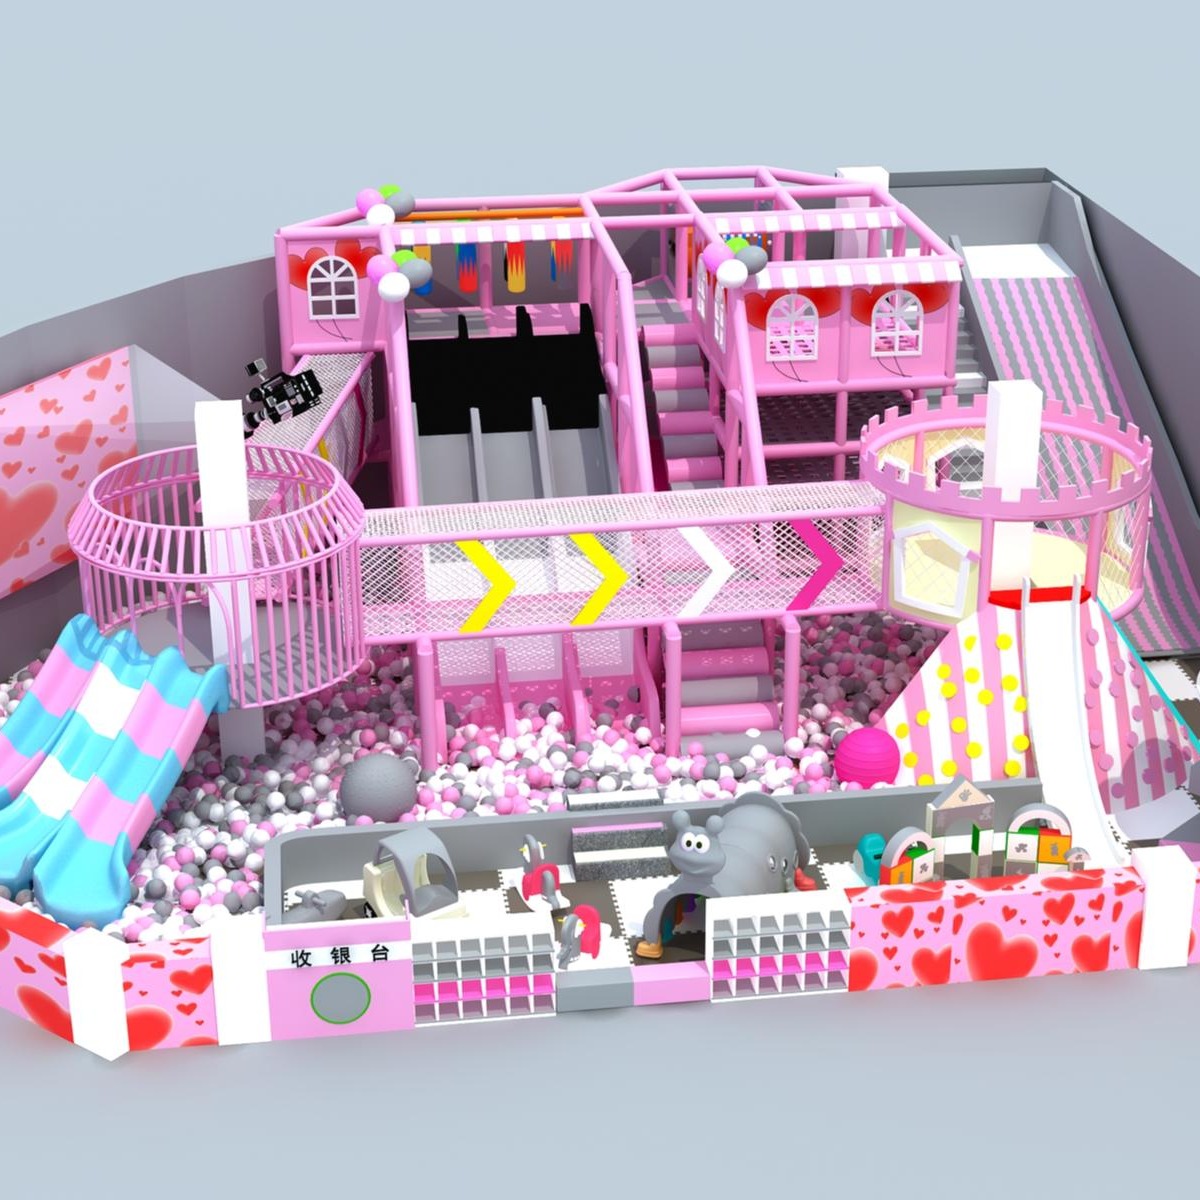 粉色系列淘气堡   淘气堡设备 儿童乐园设备  拼色滑梯   鸟笼图片